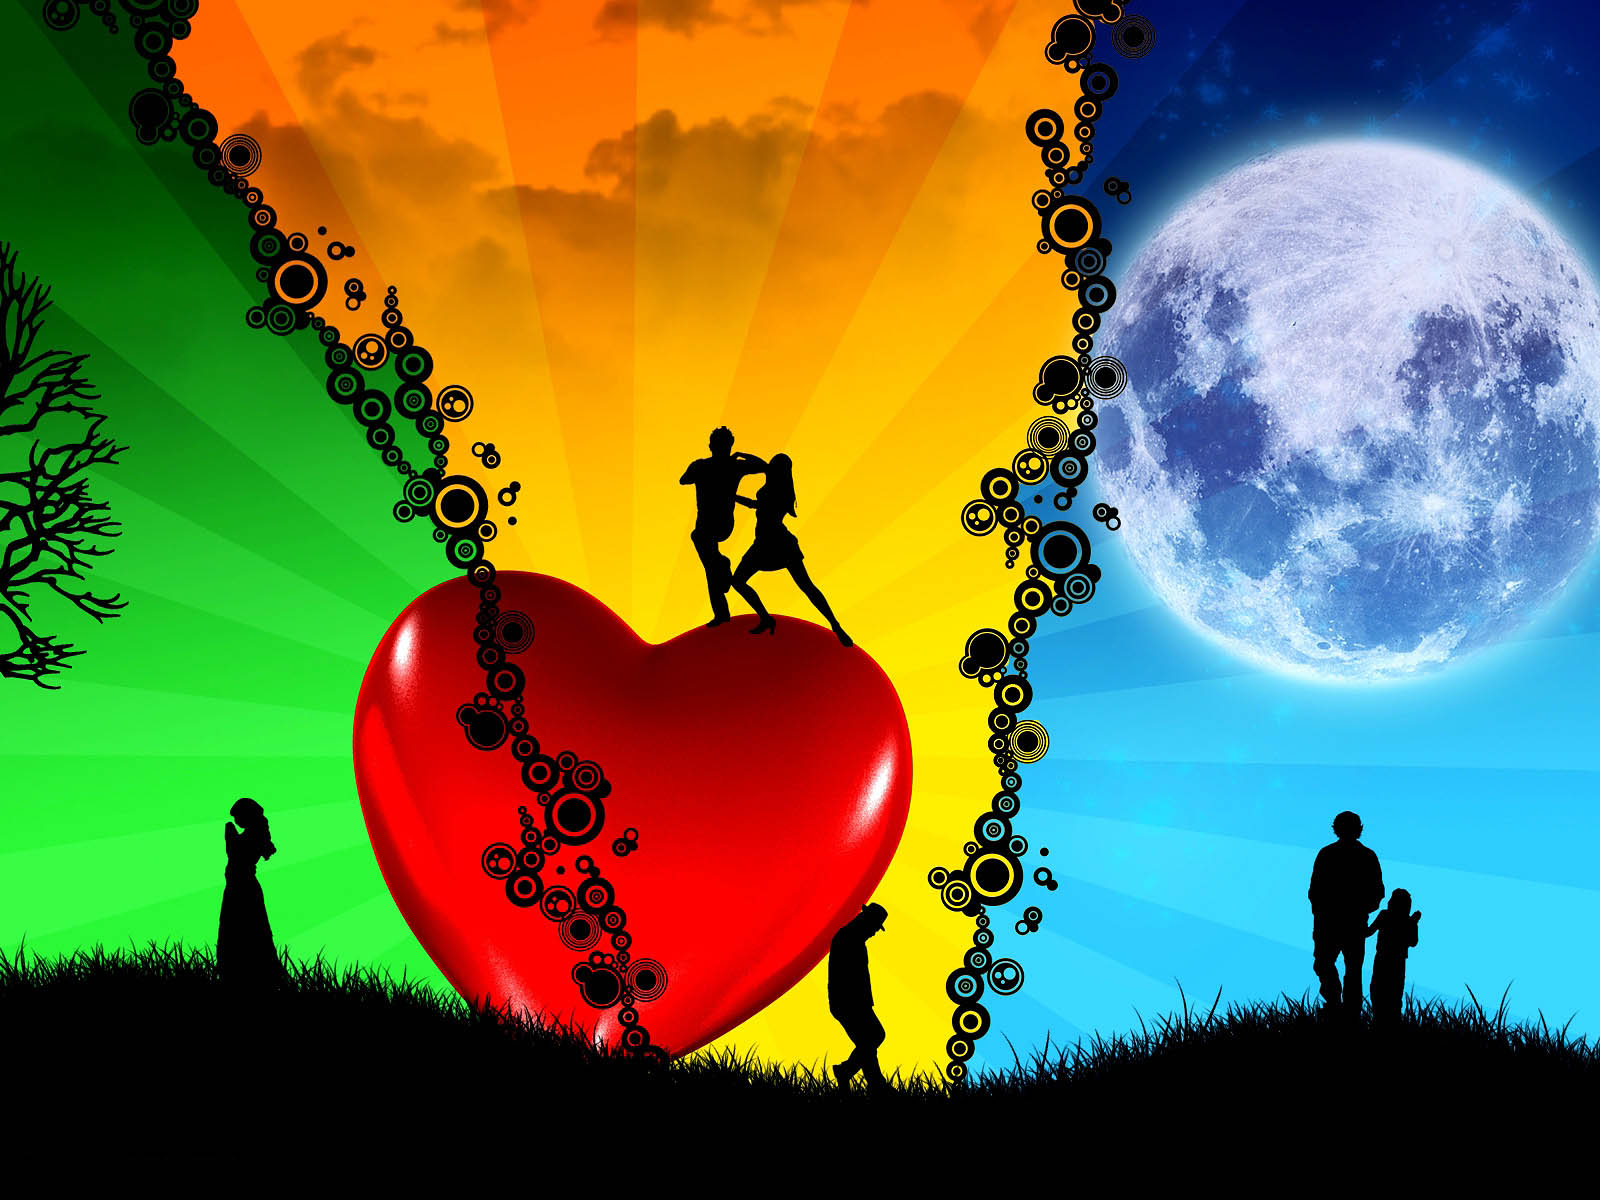 사랑의 그림의 hd 벽지,하늘,심장,사랑,발렌타인 데이,장난